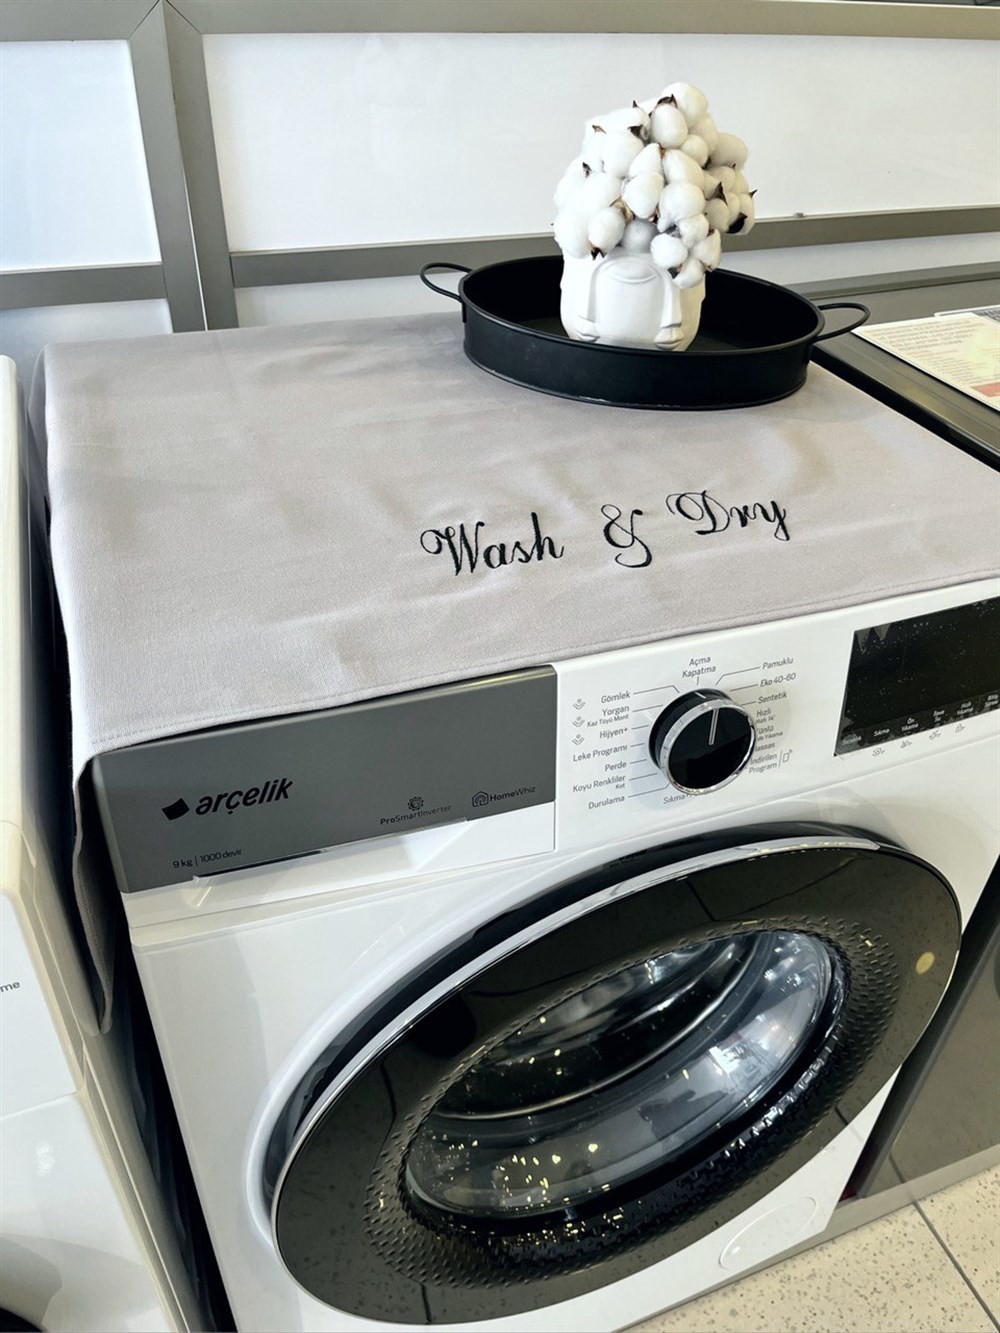 Atölye No 35 Gri Wash&Dry Çamaşır Kurutma Makinesi Örtüsü